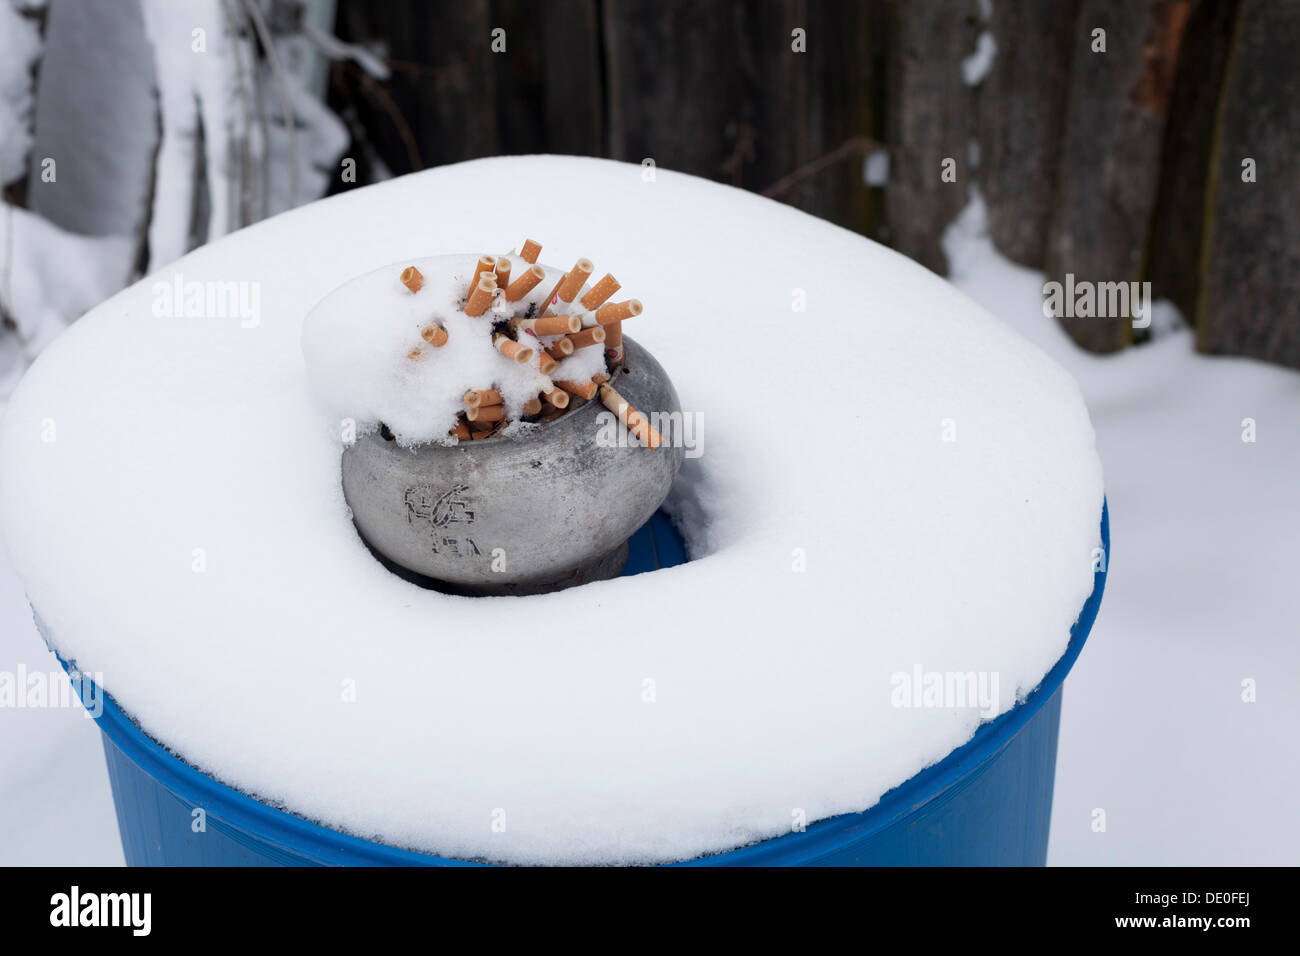 Snow dipendenza immagini e fotografie stock ad alta risoluzione - Alamy